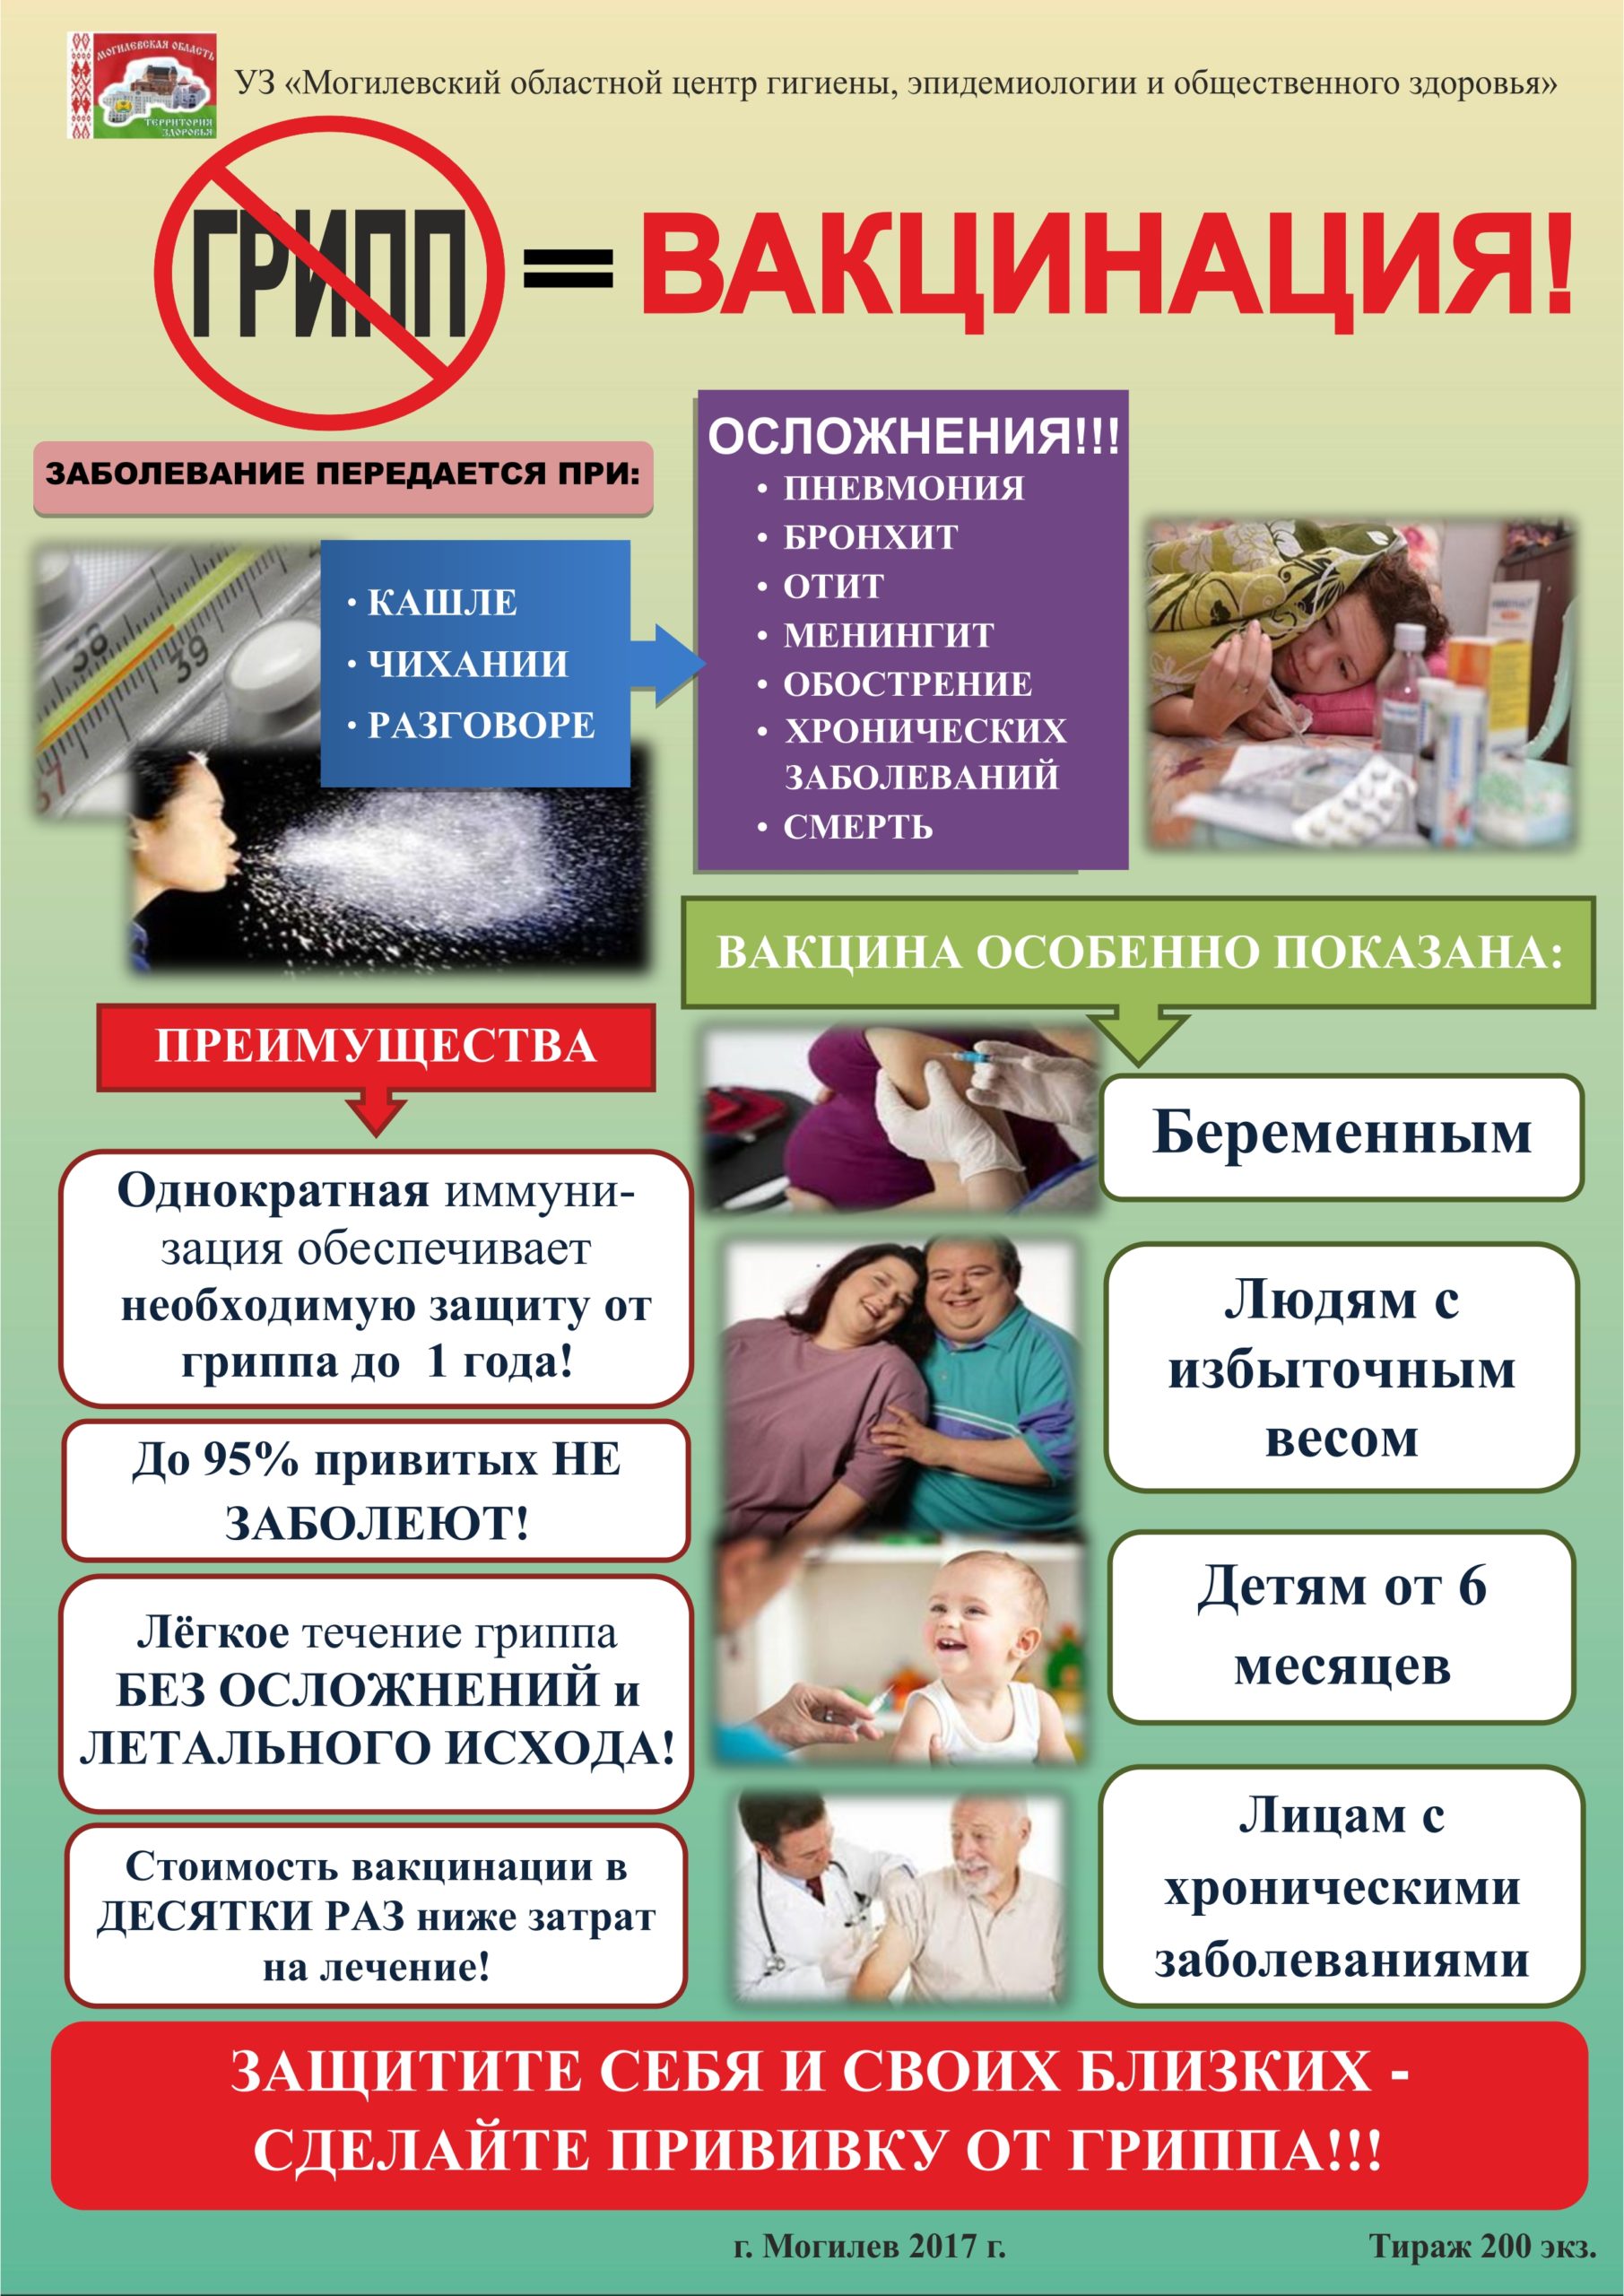 Вакцинация и профилактика гриппа и ОРВИ.